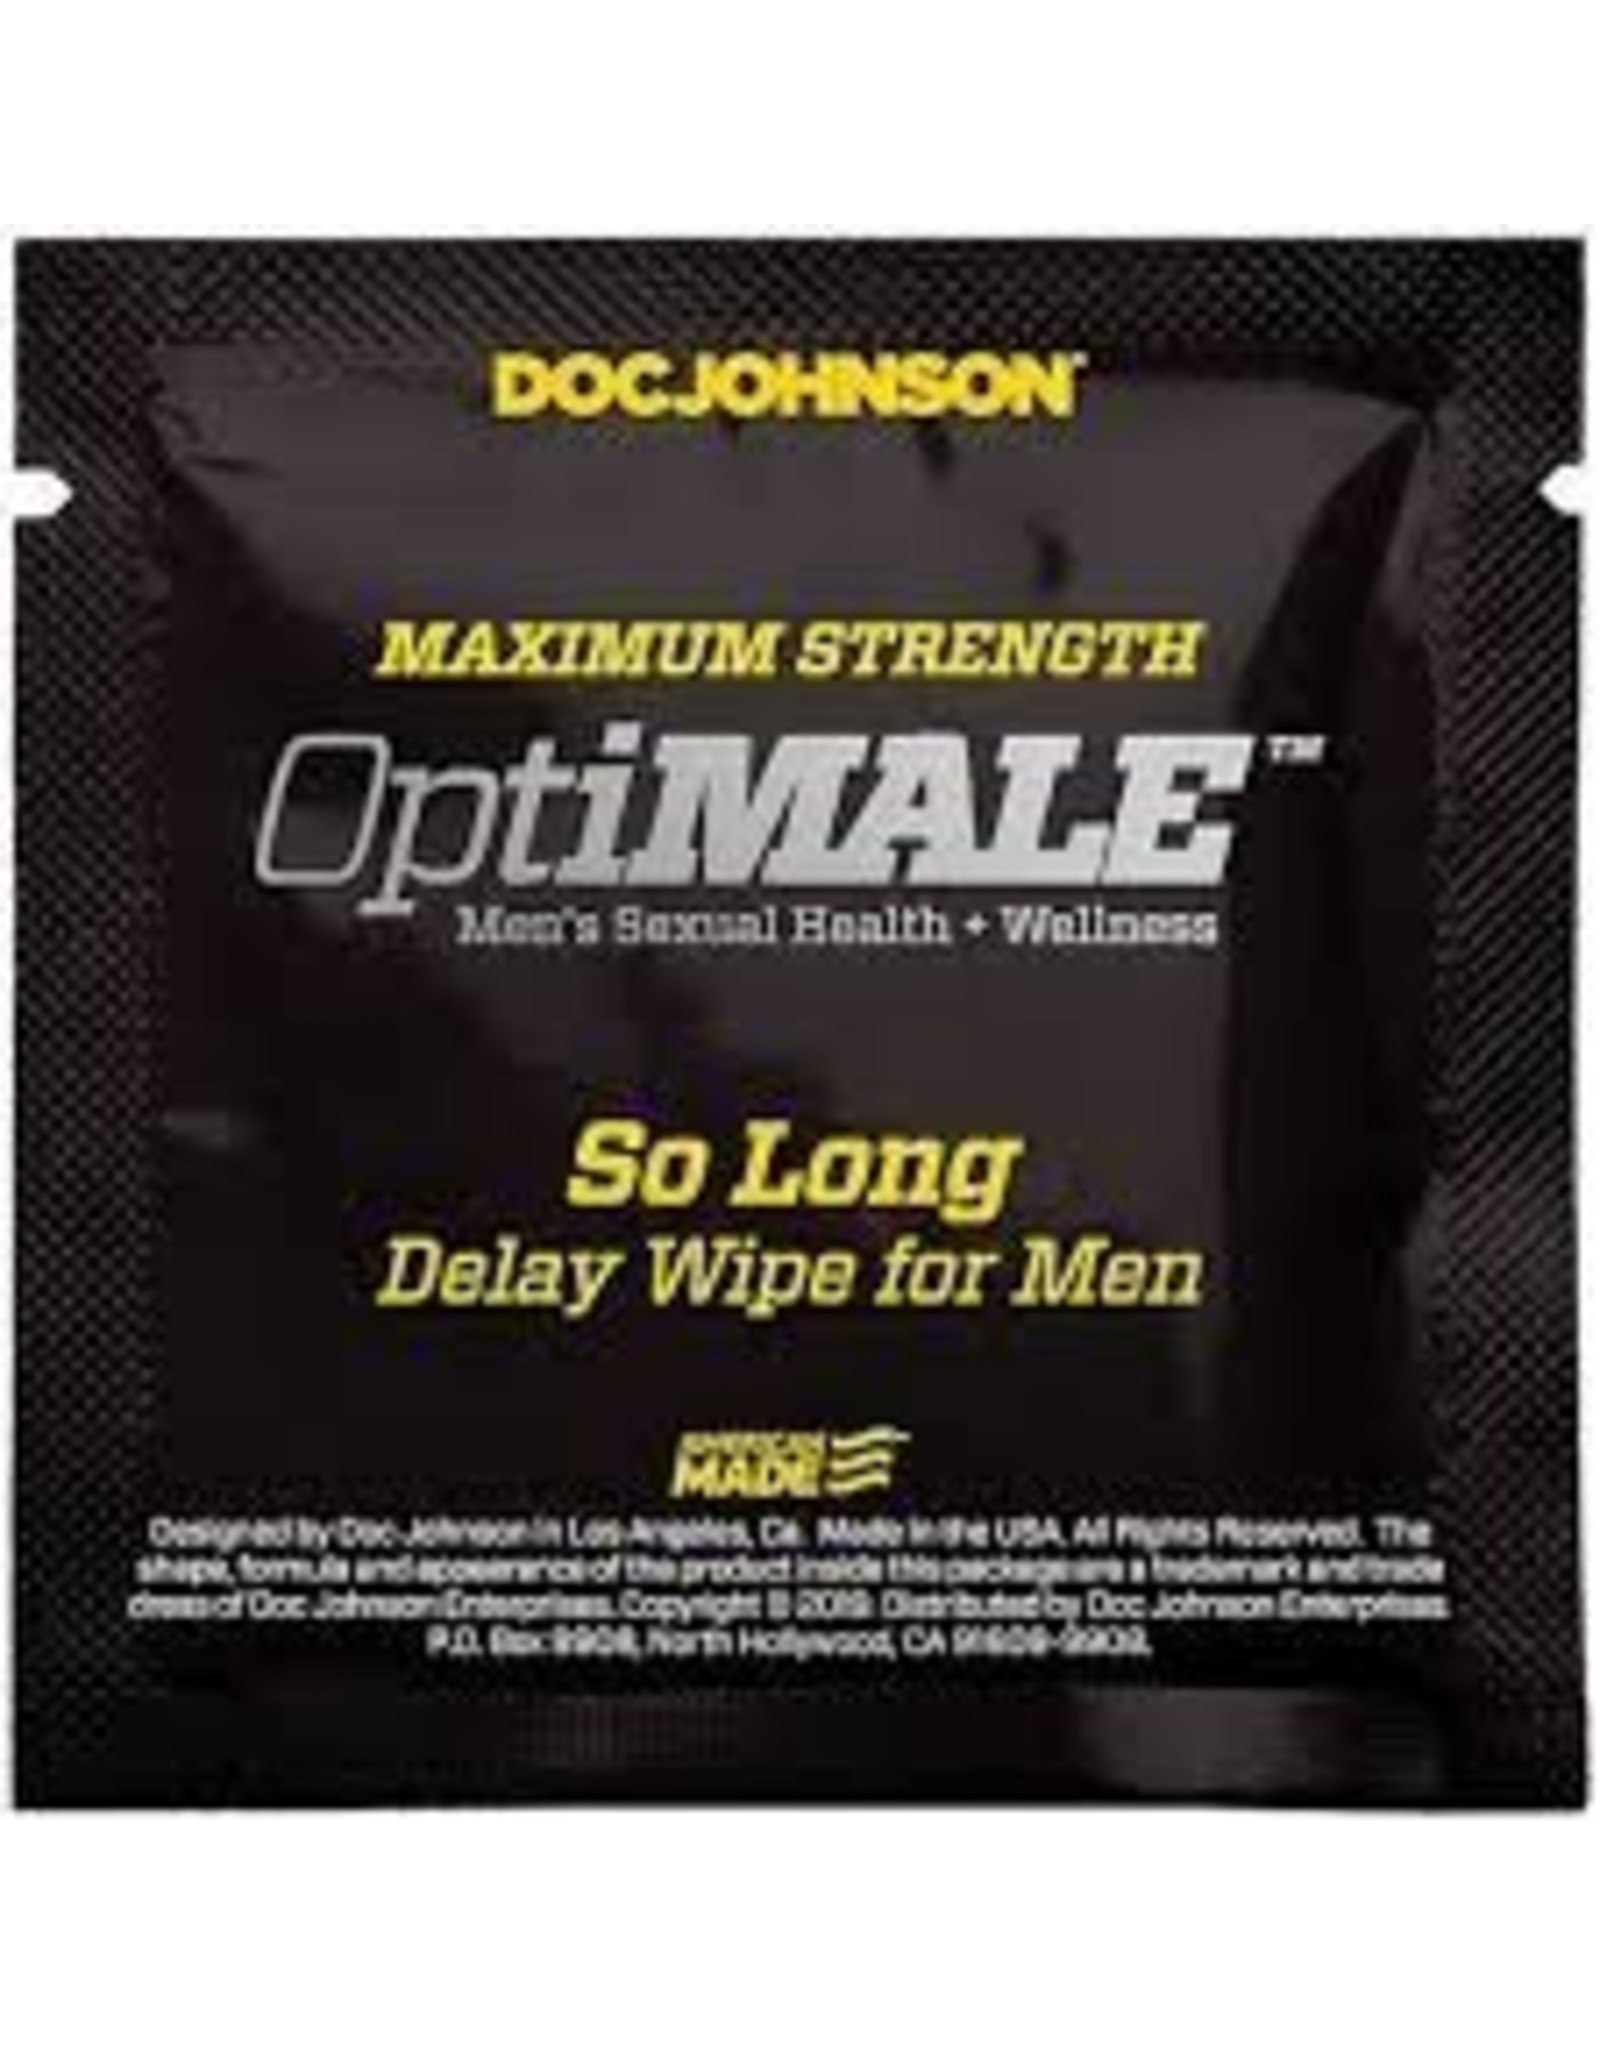 Doc Johnson OPTIMALE So Long Delay Wipes for Men